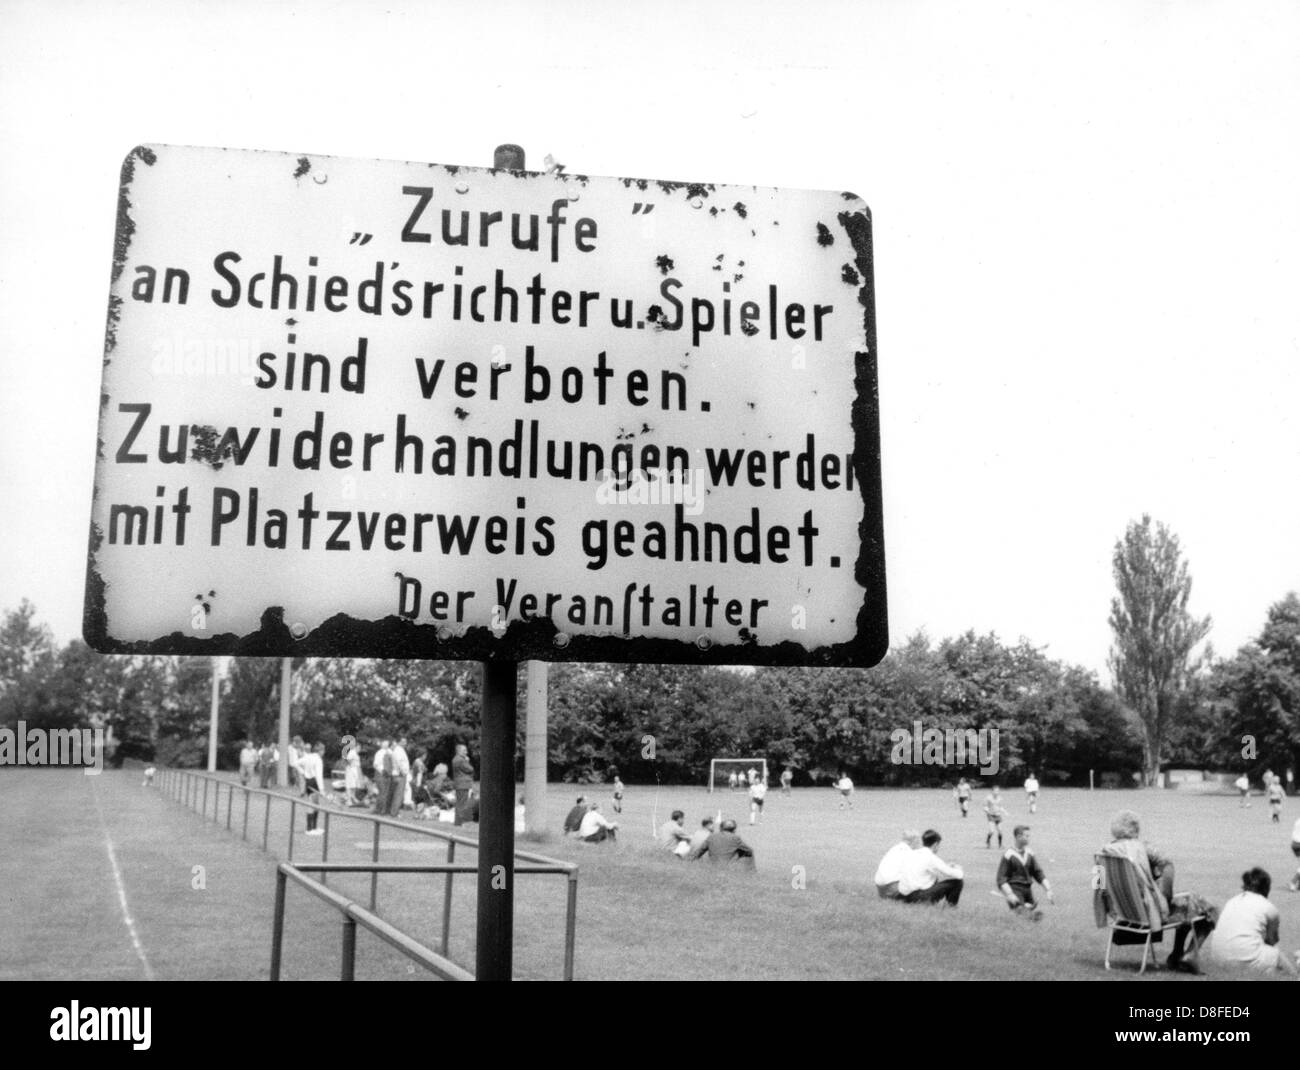 Eine verwitterte Schild auf einem Fußballplatz in Schweinfurt sagt "Rufe an Schiedsrichter und Spieler sind verboten. Zuwiderhandlungen werden durch Entlassung bestraft werden ". Stockfoto